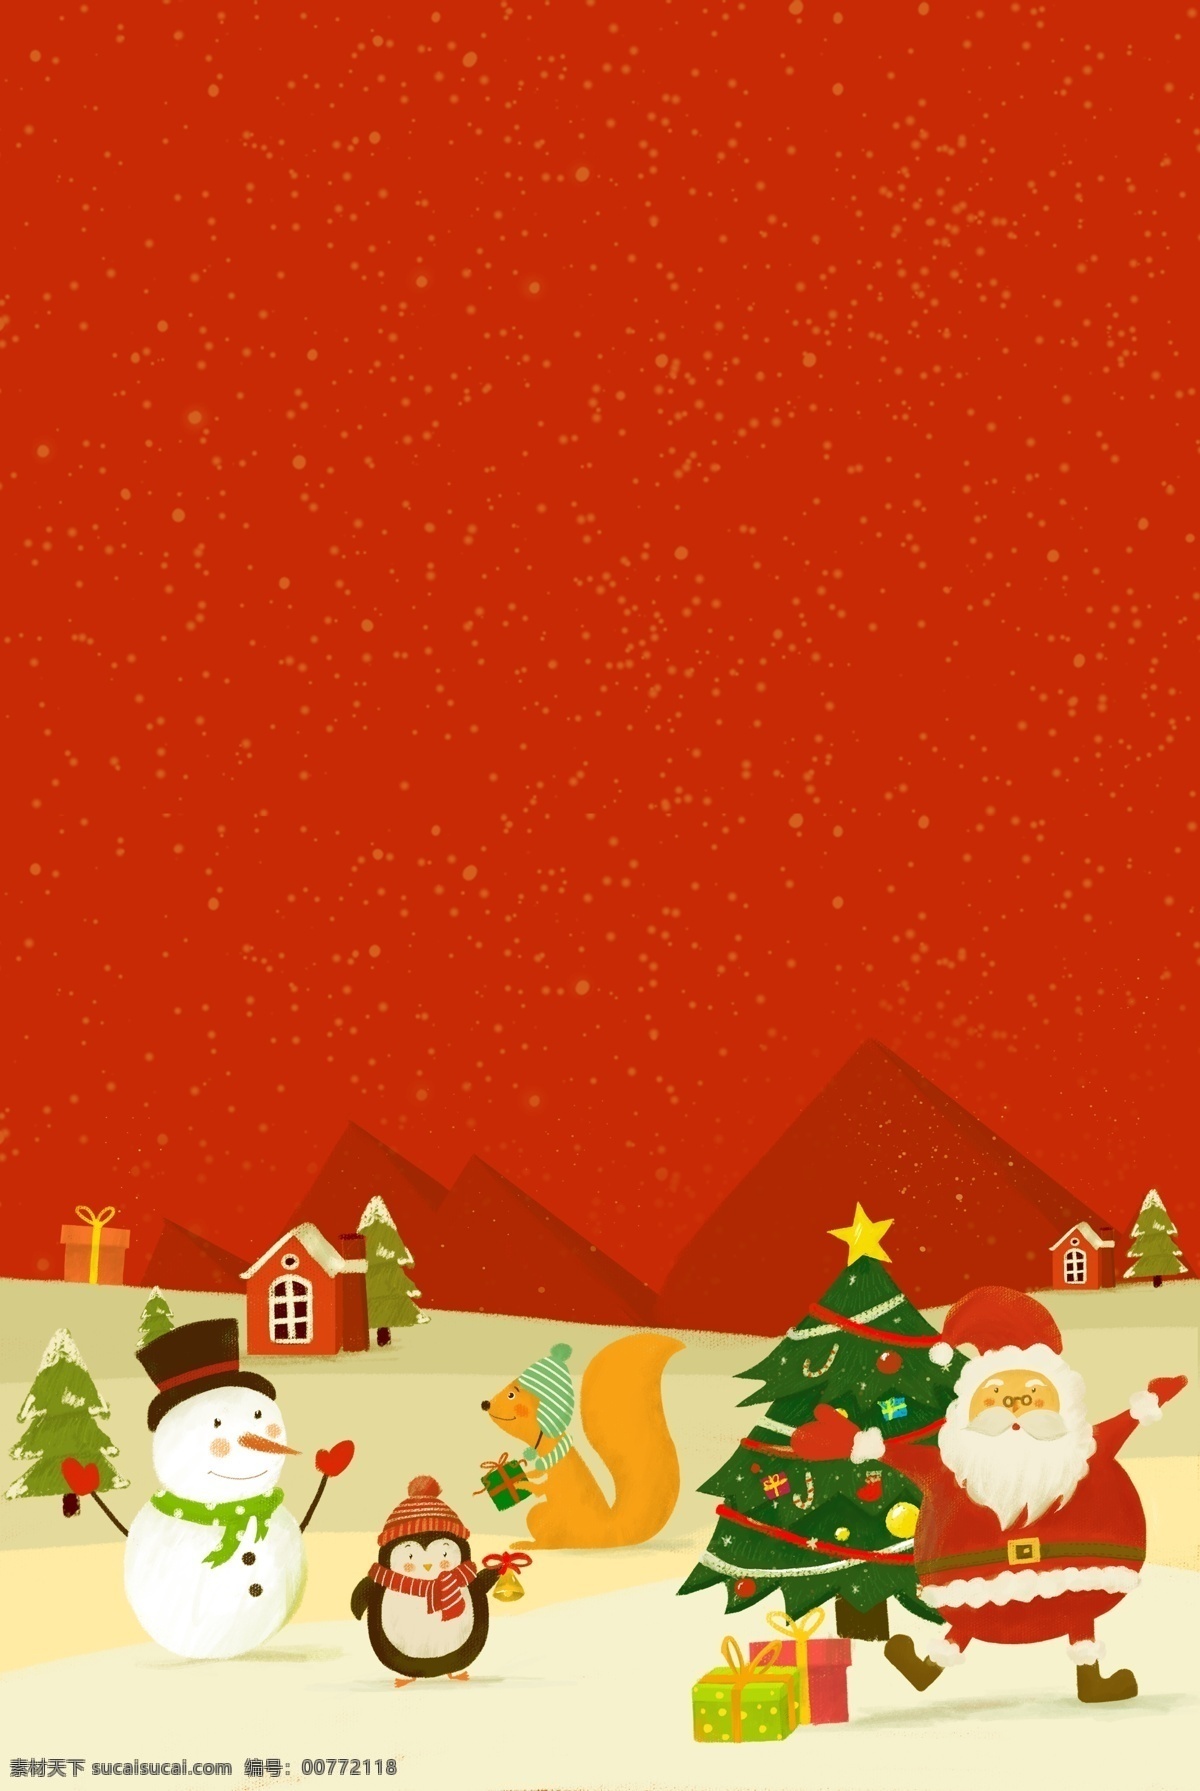 雪人 圣诞节 快乐 节日 促销 广告 背景 红色 圣诞树 圣诞老人 唯美背景 麋鹿 双旦优惠 圣诞活动 雪地 圣诞 平安夜 圣诞促销 圣诞快乐 广告背景